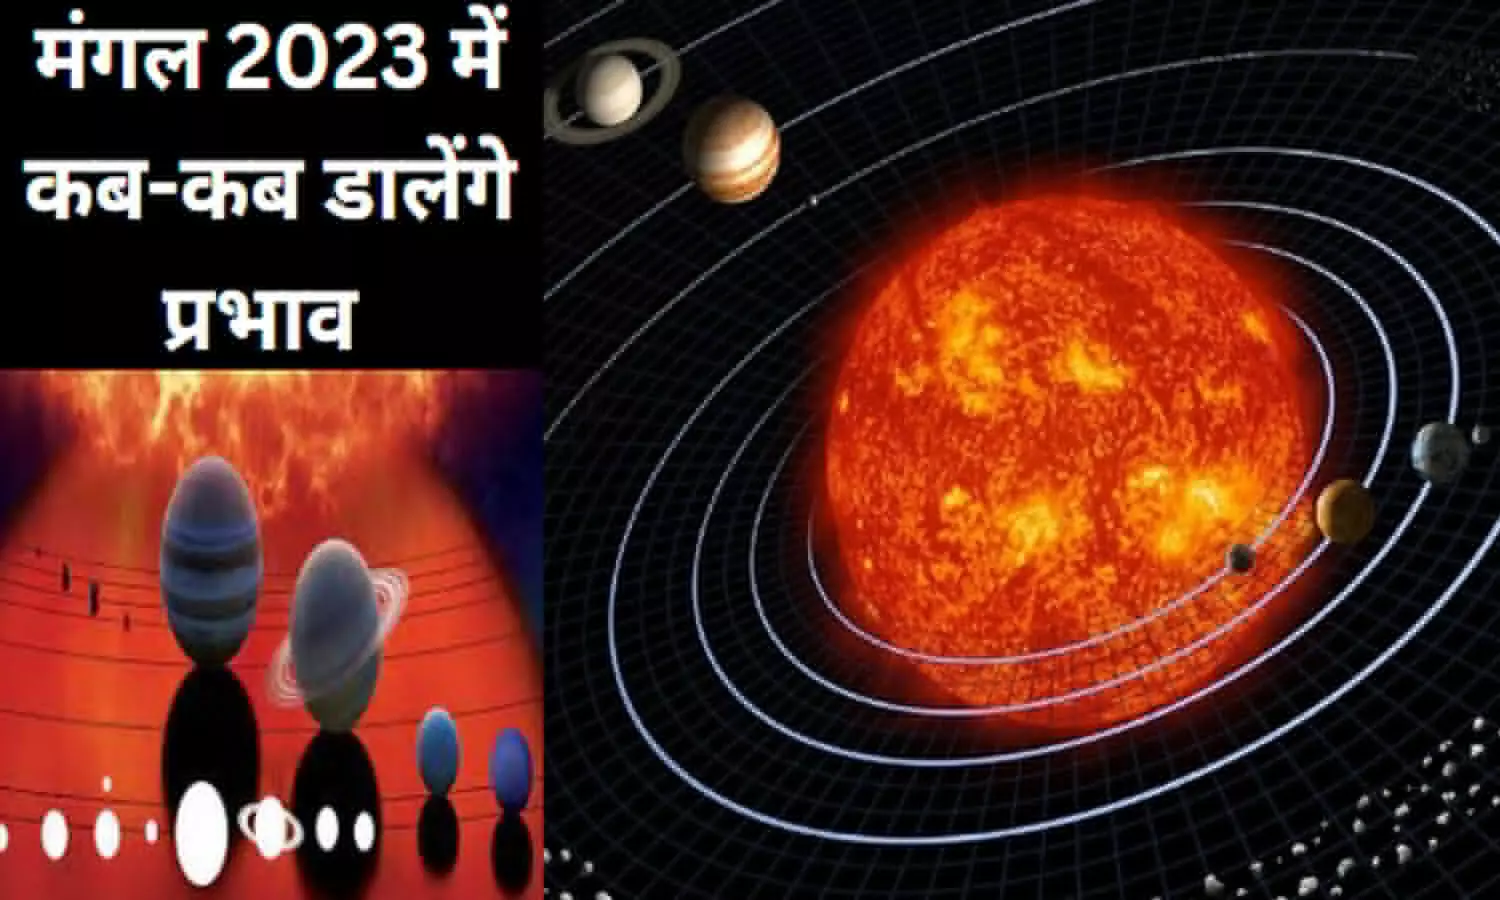 Mangal 2023 me Kab -Kab Prabhav Dalengeमंगल कब-कब डालेंगे प्रभाव : जानिए पहला राशि परिवर्तन कब होगा और 12 राशियों पर इसका असर